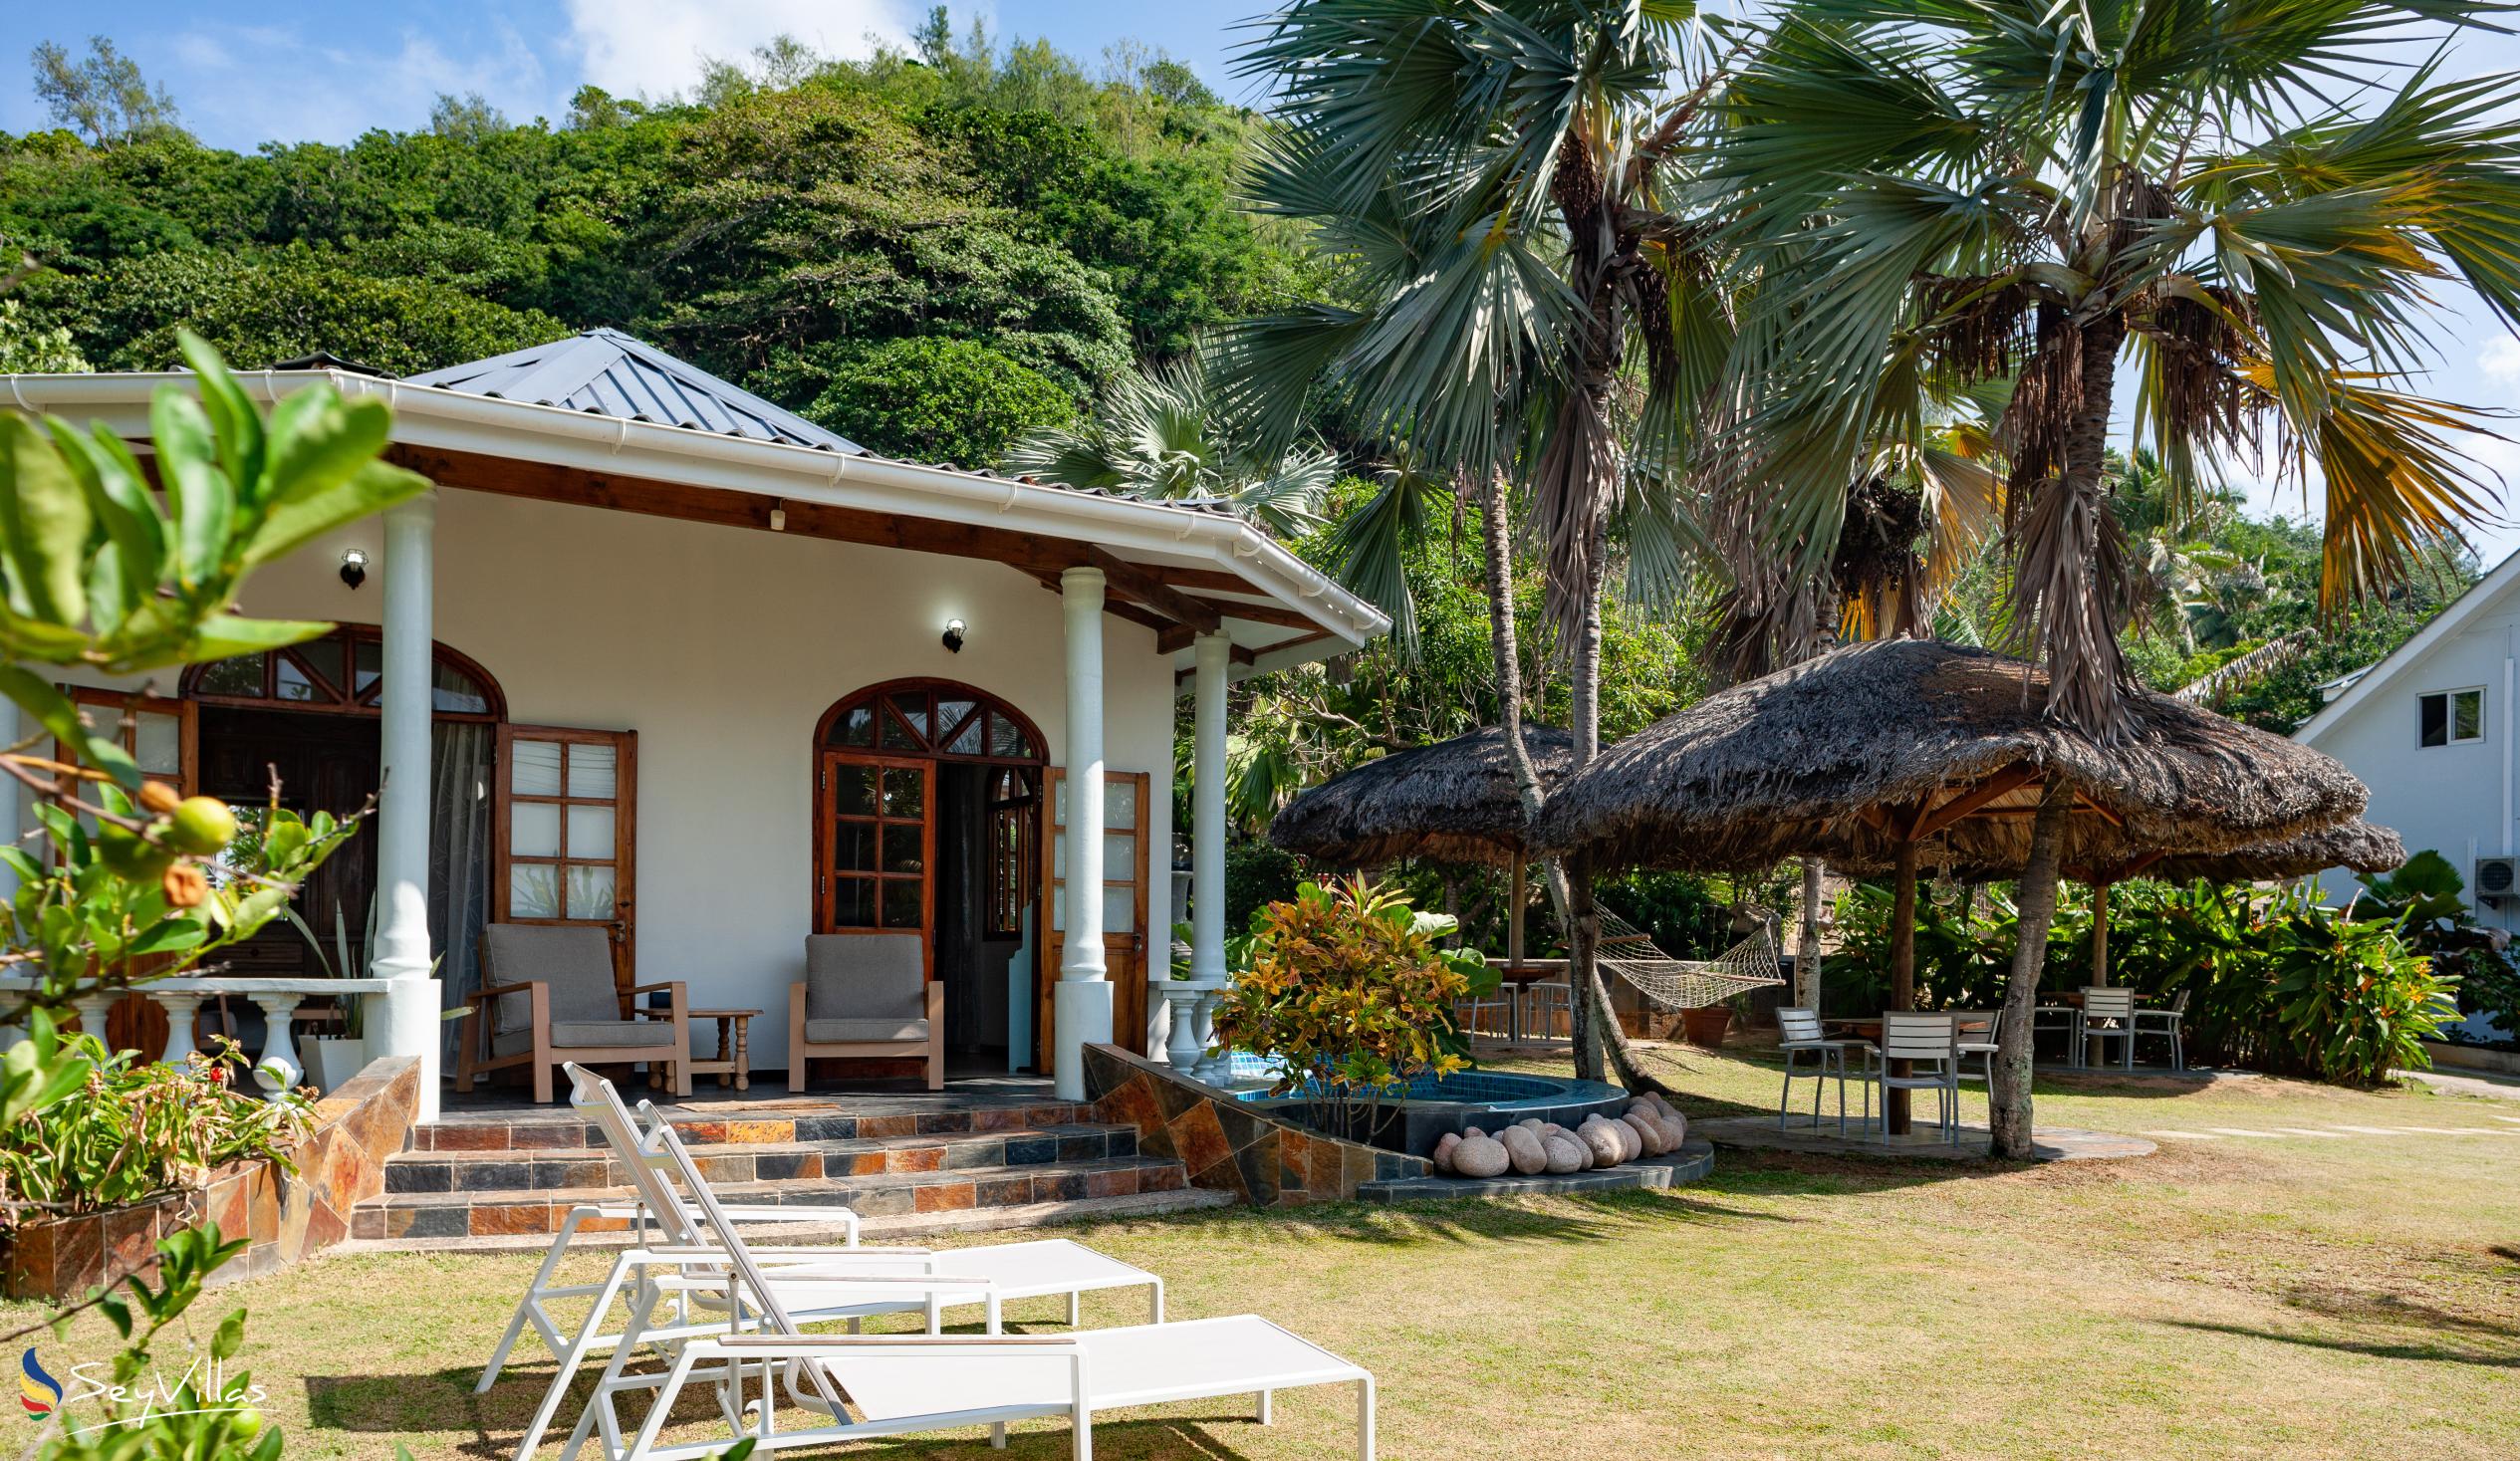 Foto 6: La Petite Maison - Aussenbereich - Praslin (Seychellen)